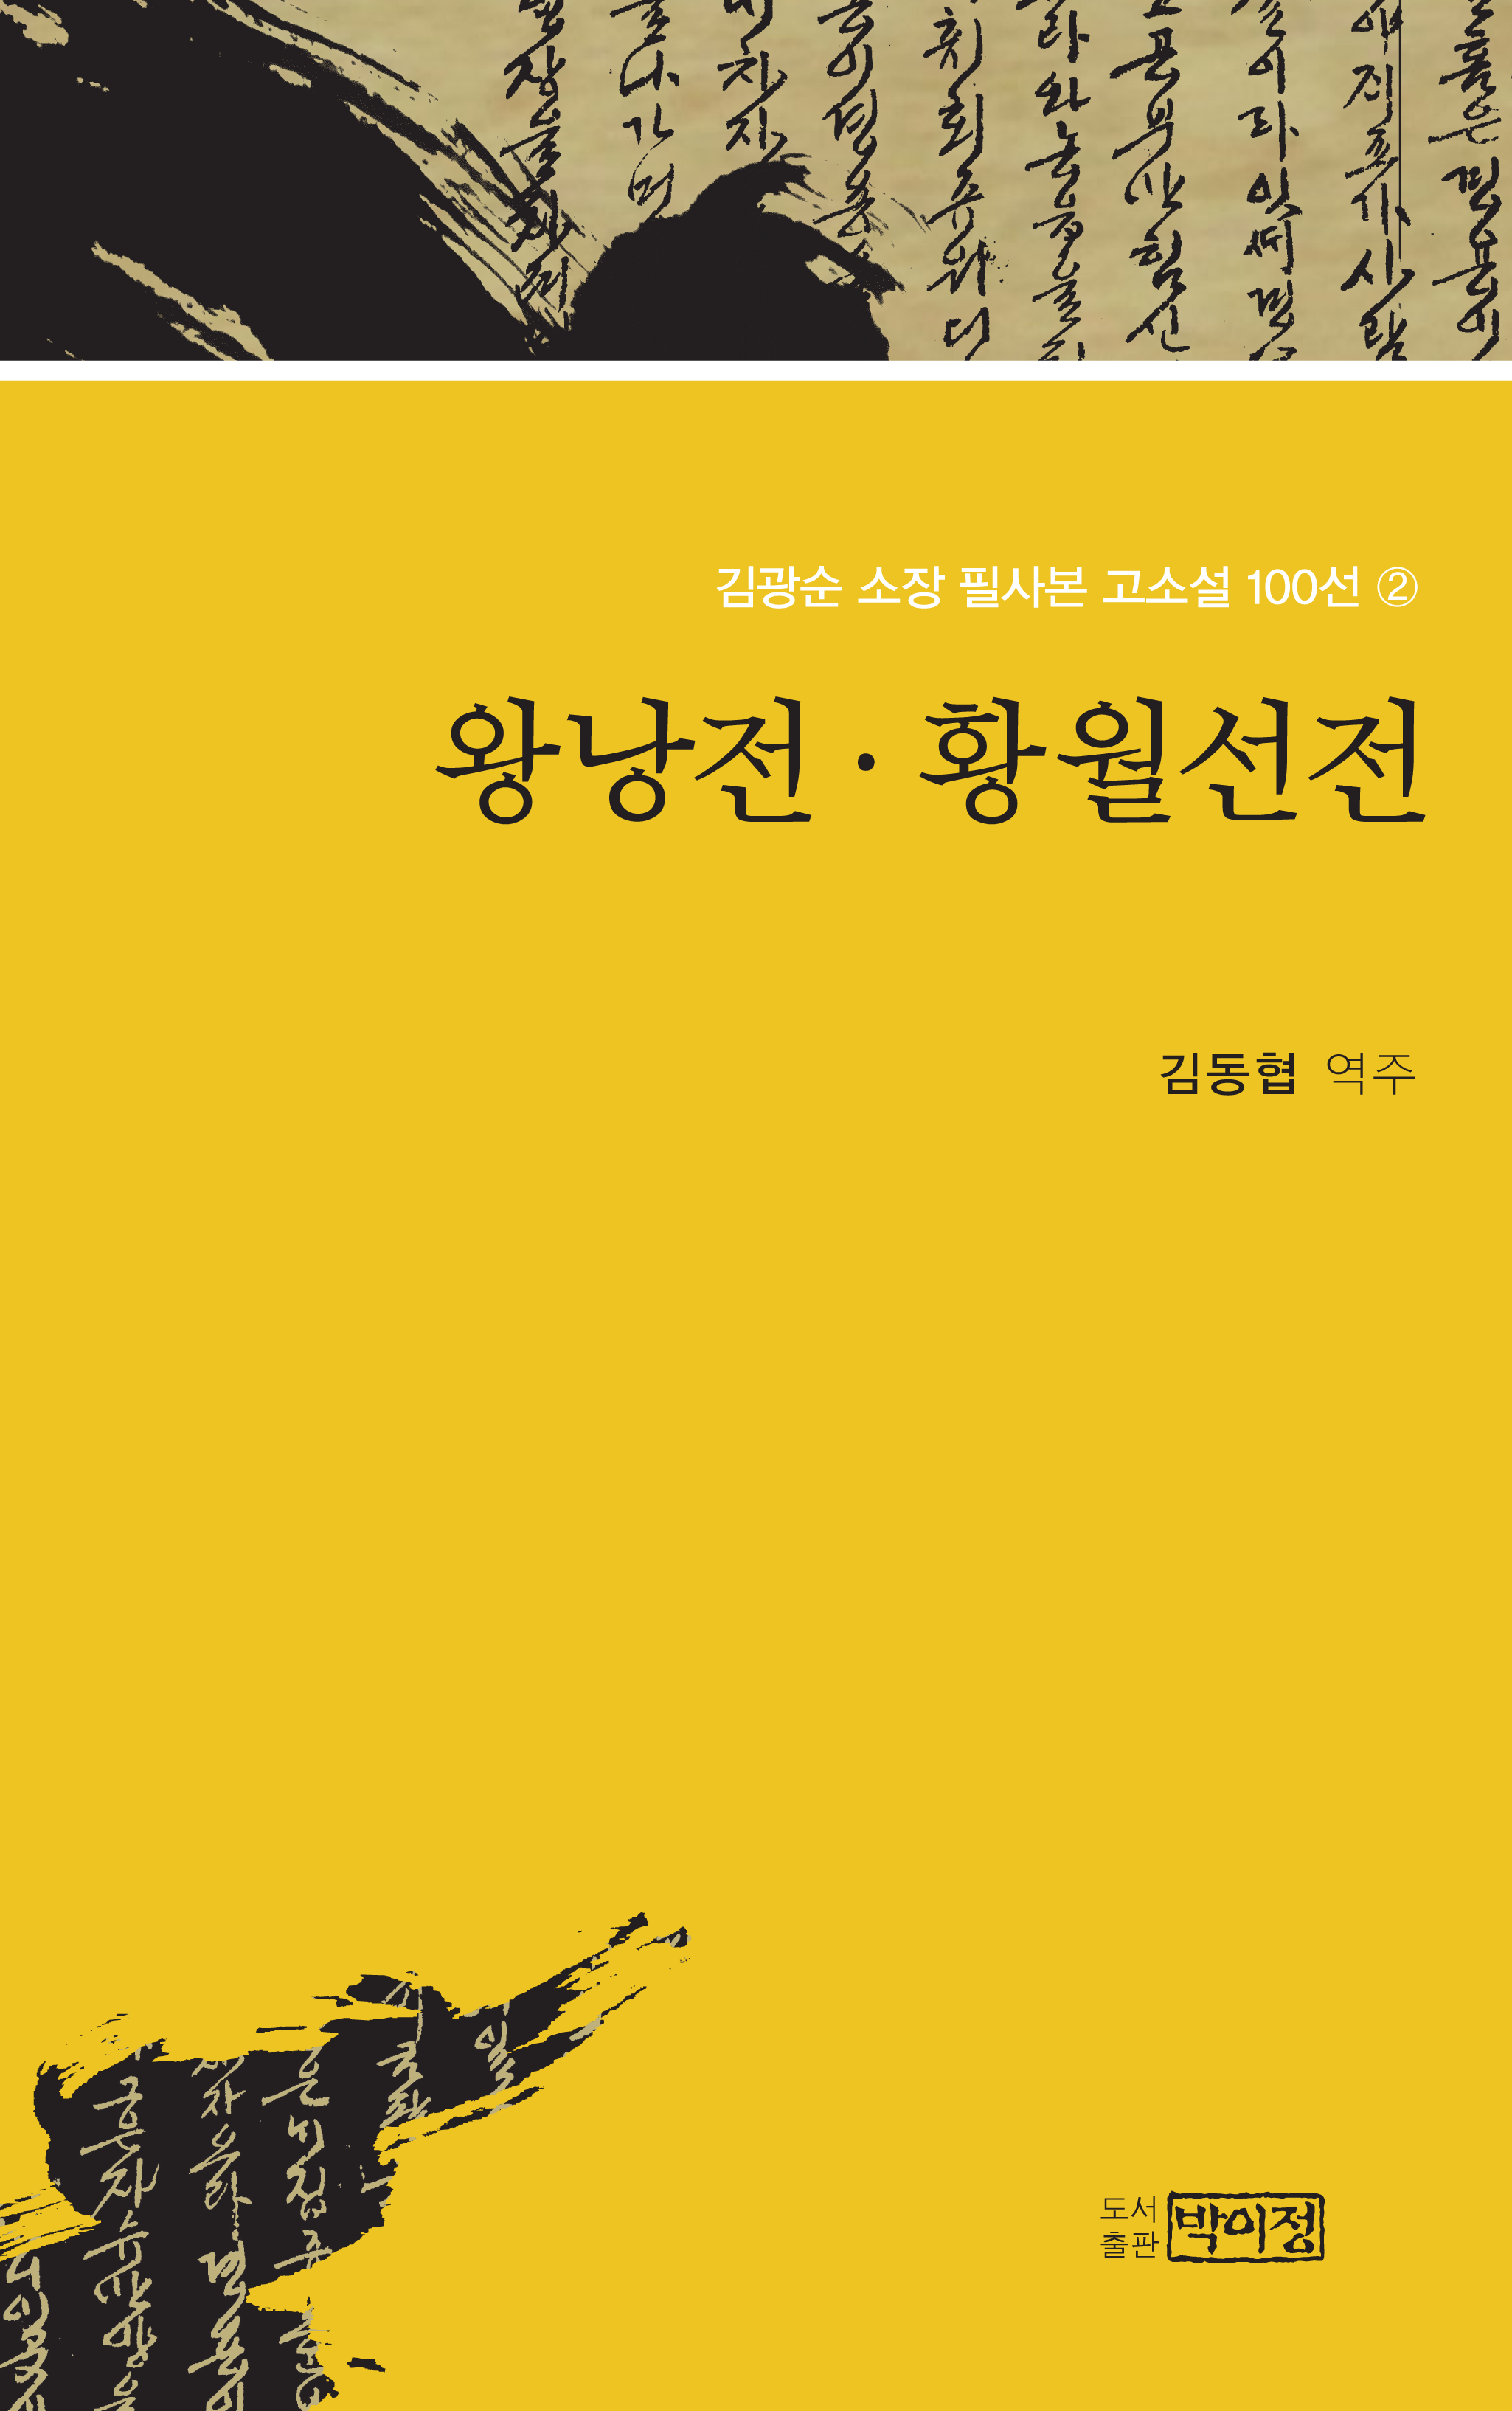 김광순 소장 필사본 고소설 100선 2_왕낭전·황월설전